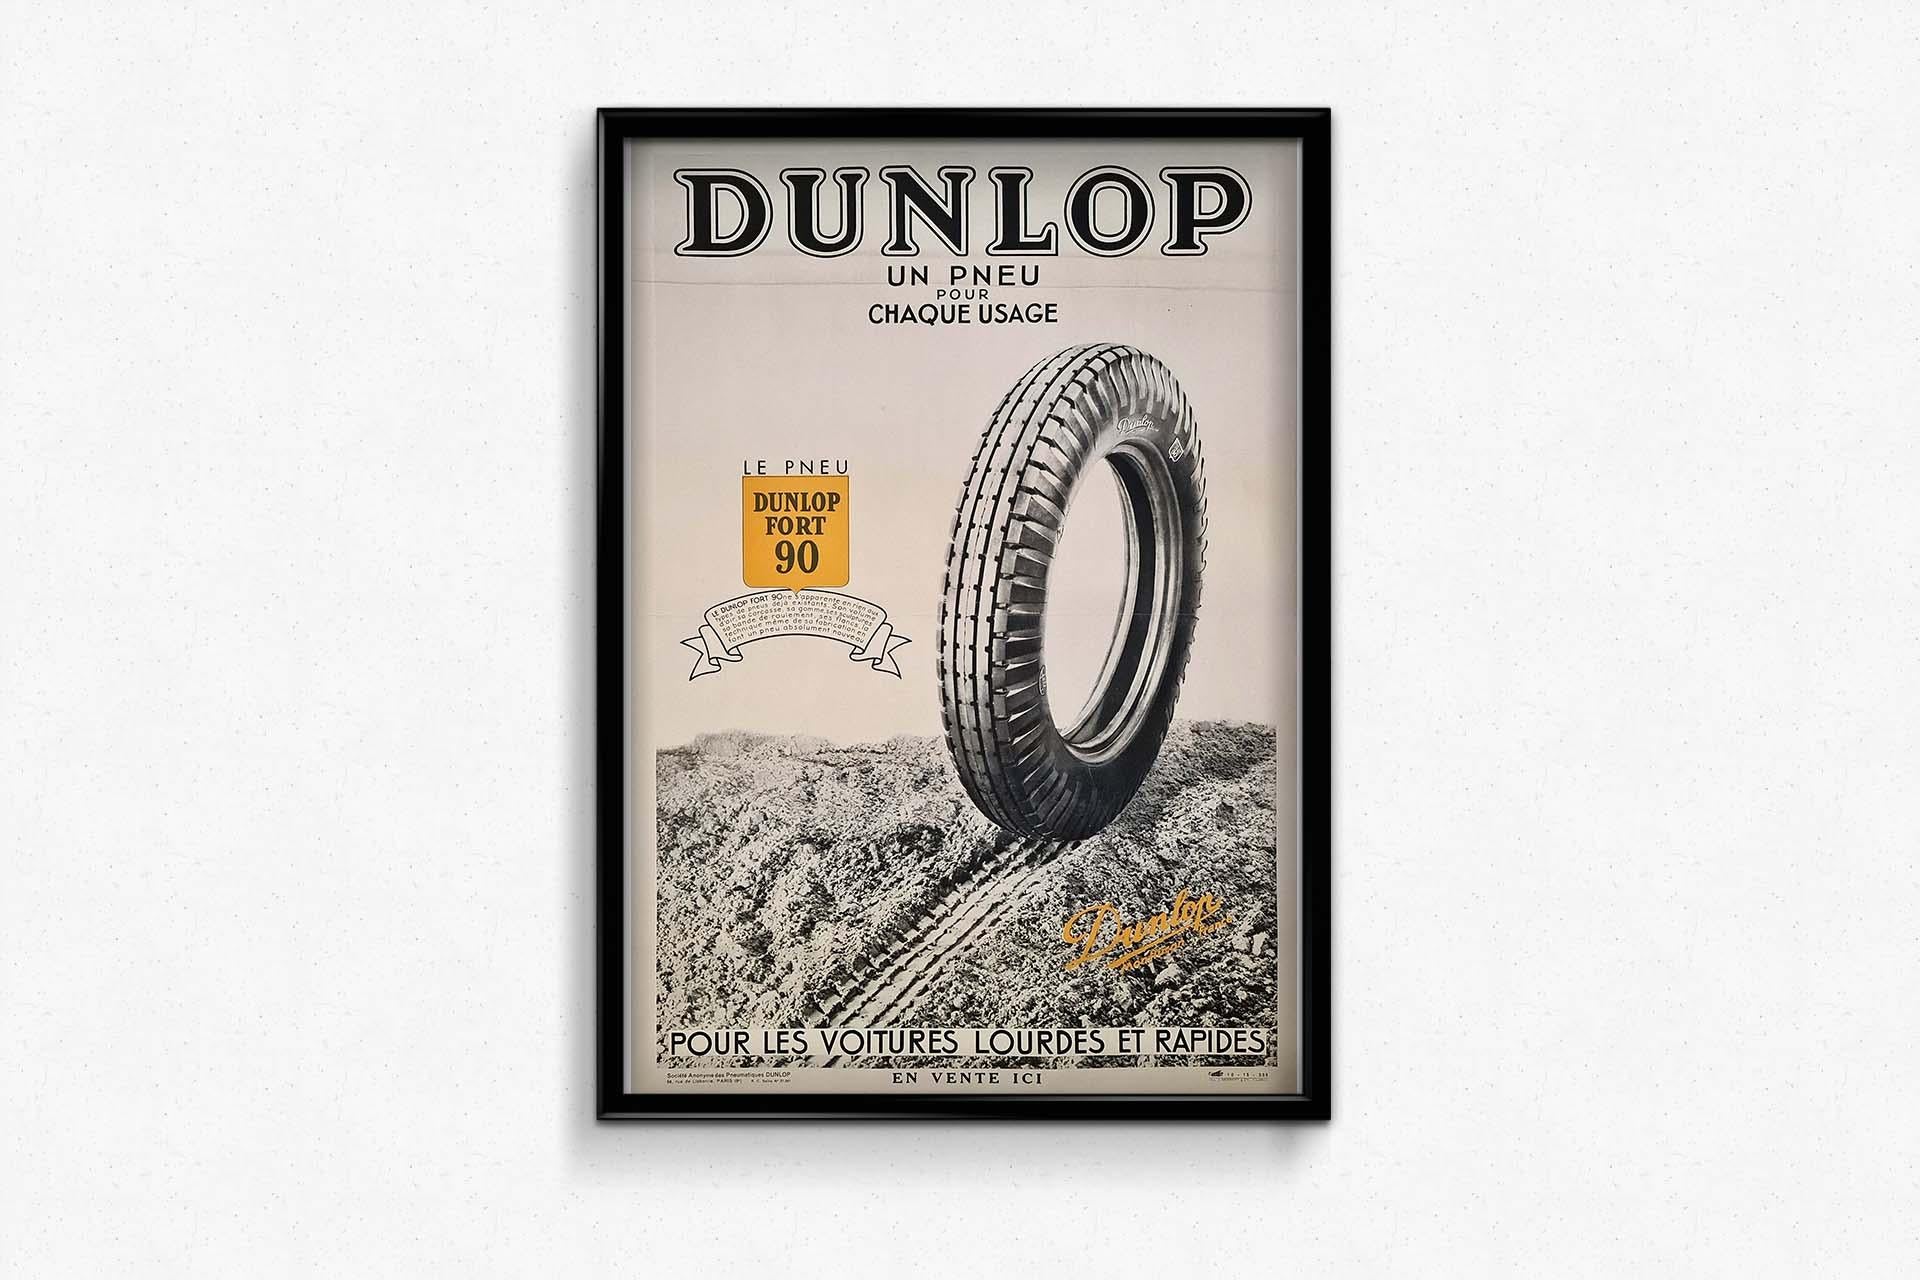 Das Original-Werbeplakat von Dunlop aus dem Jahr 1935 stellt dem Betrachter die vielseitigen Fähigkeiten des Dunlop Fort 90-Reifens vor, ein Zeugnis für Innovation und Zuverlässigkeit in der Automobilindustrie. Dieses mit Präzision und Liebe zum